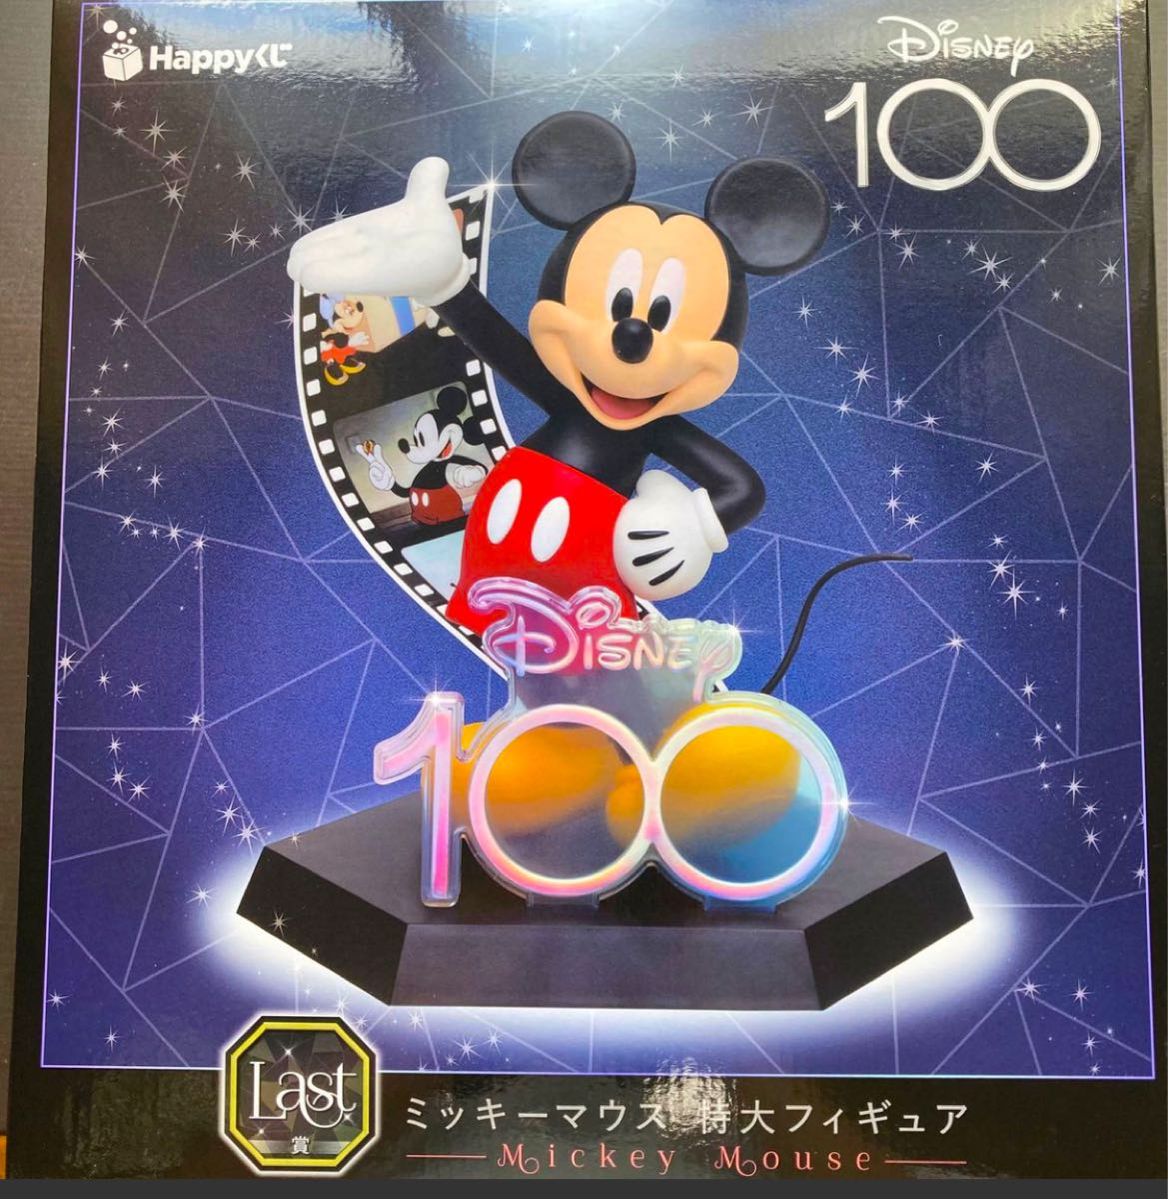 Happyくじ ディズニー100周年 ミッキーマウス 特大フィギュア ラスト